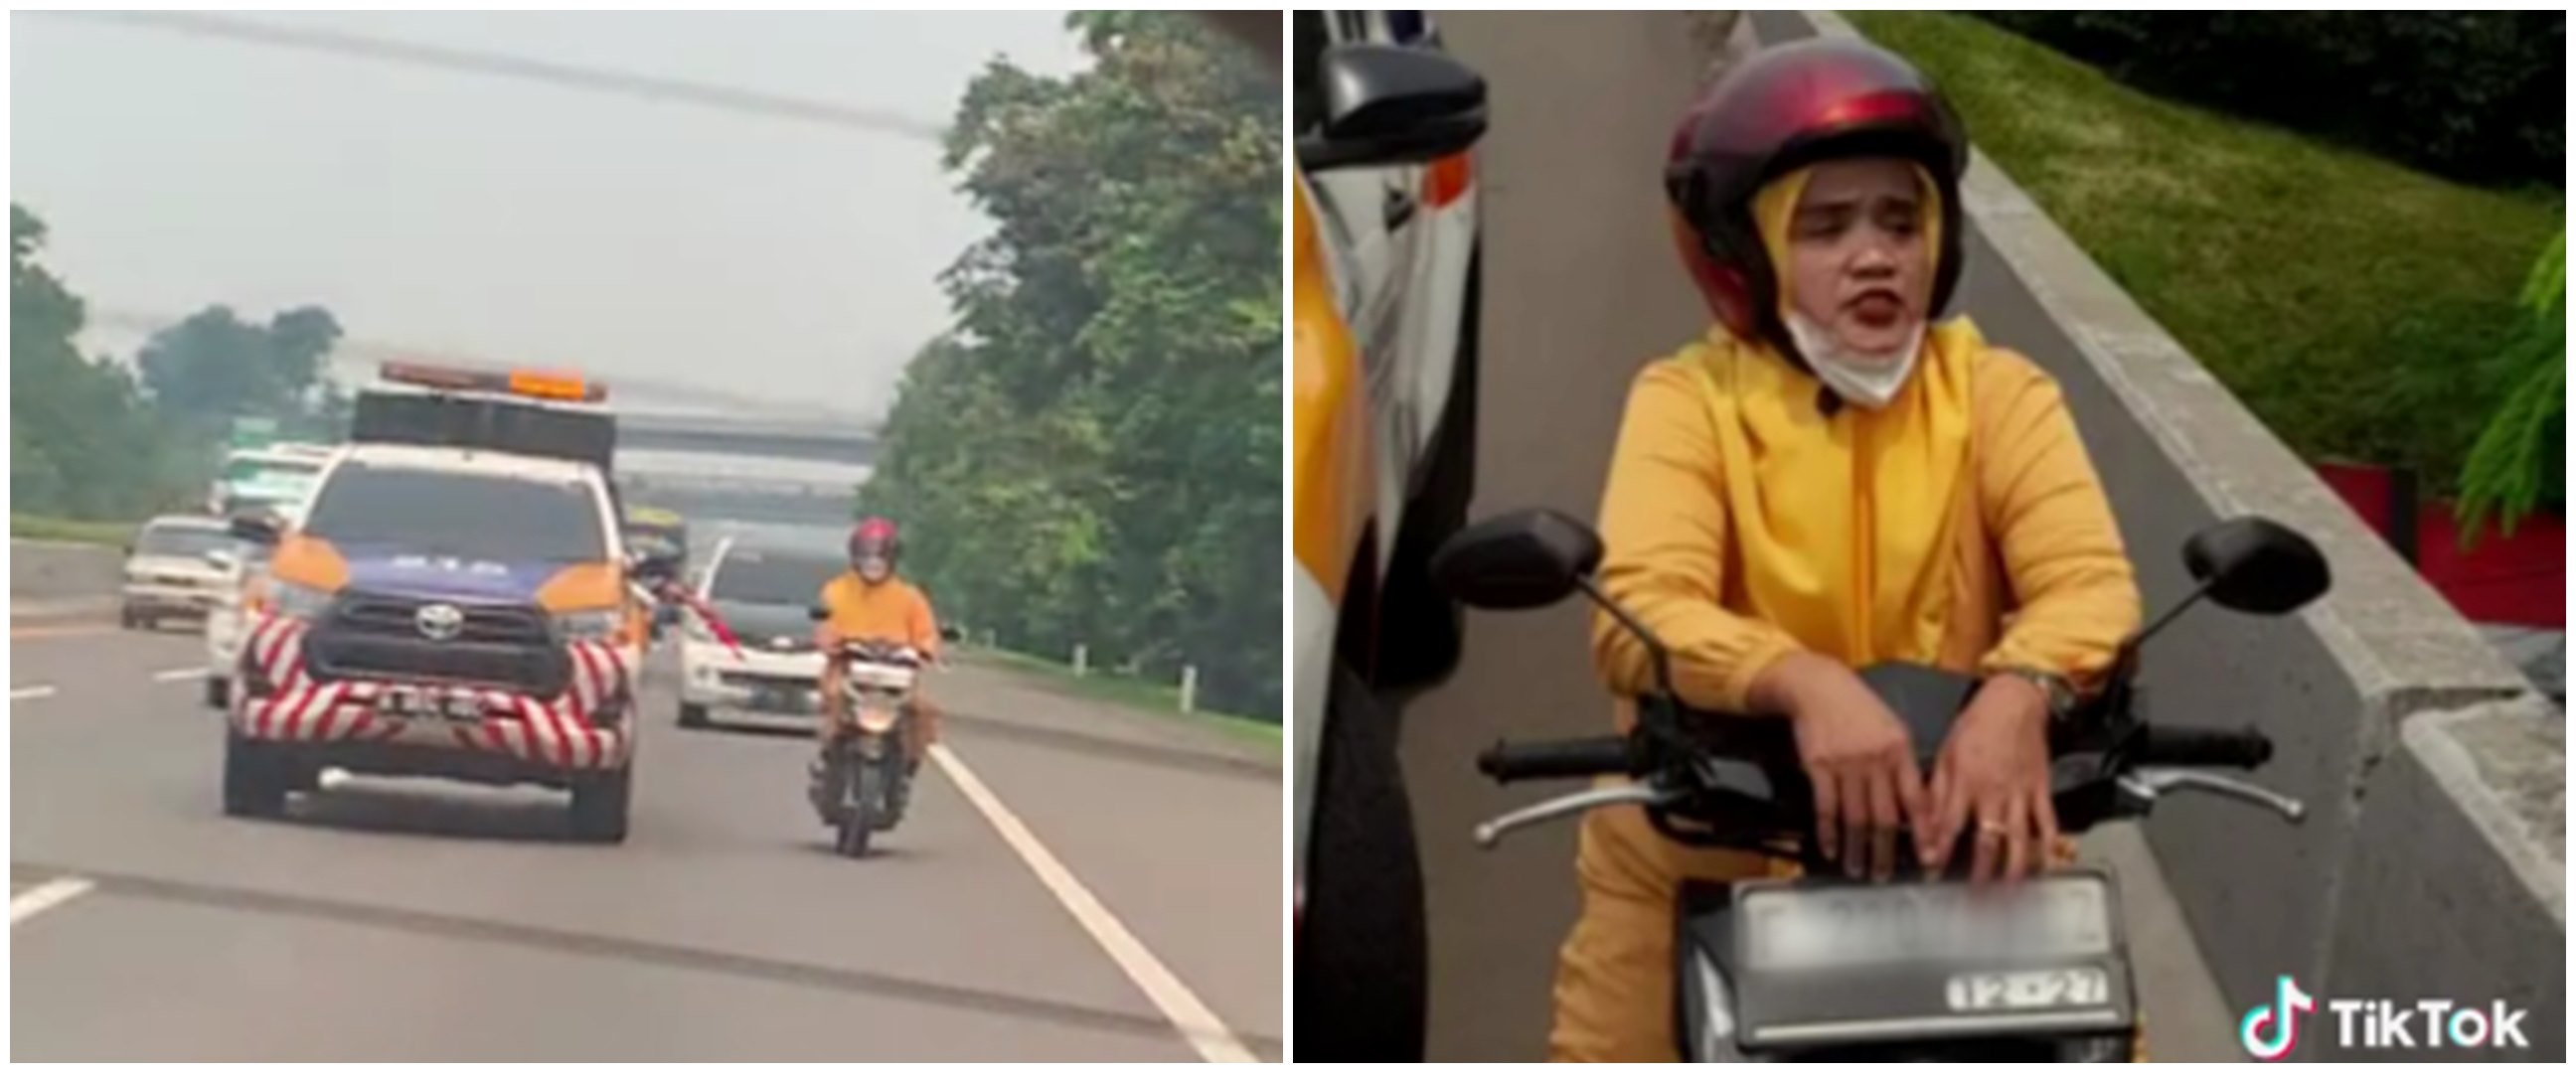 Momen petugas berhentikan emak-emak motoran di jalan tol, aksi kejar-kejarannya bak di film action